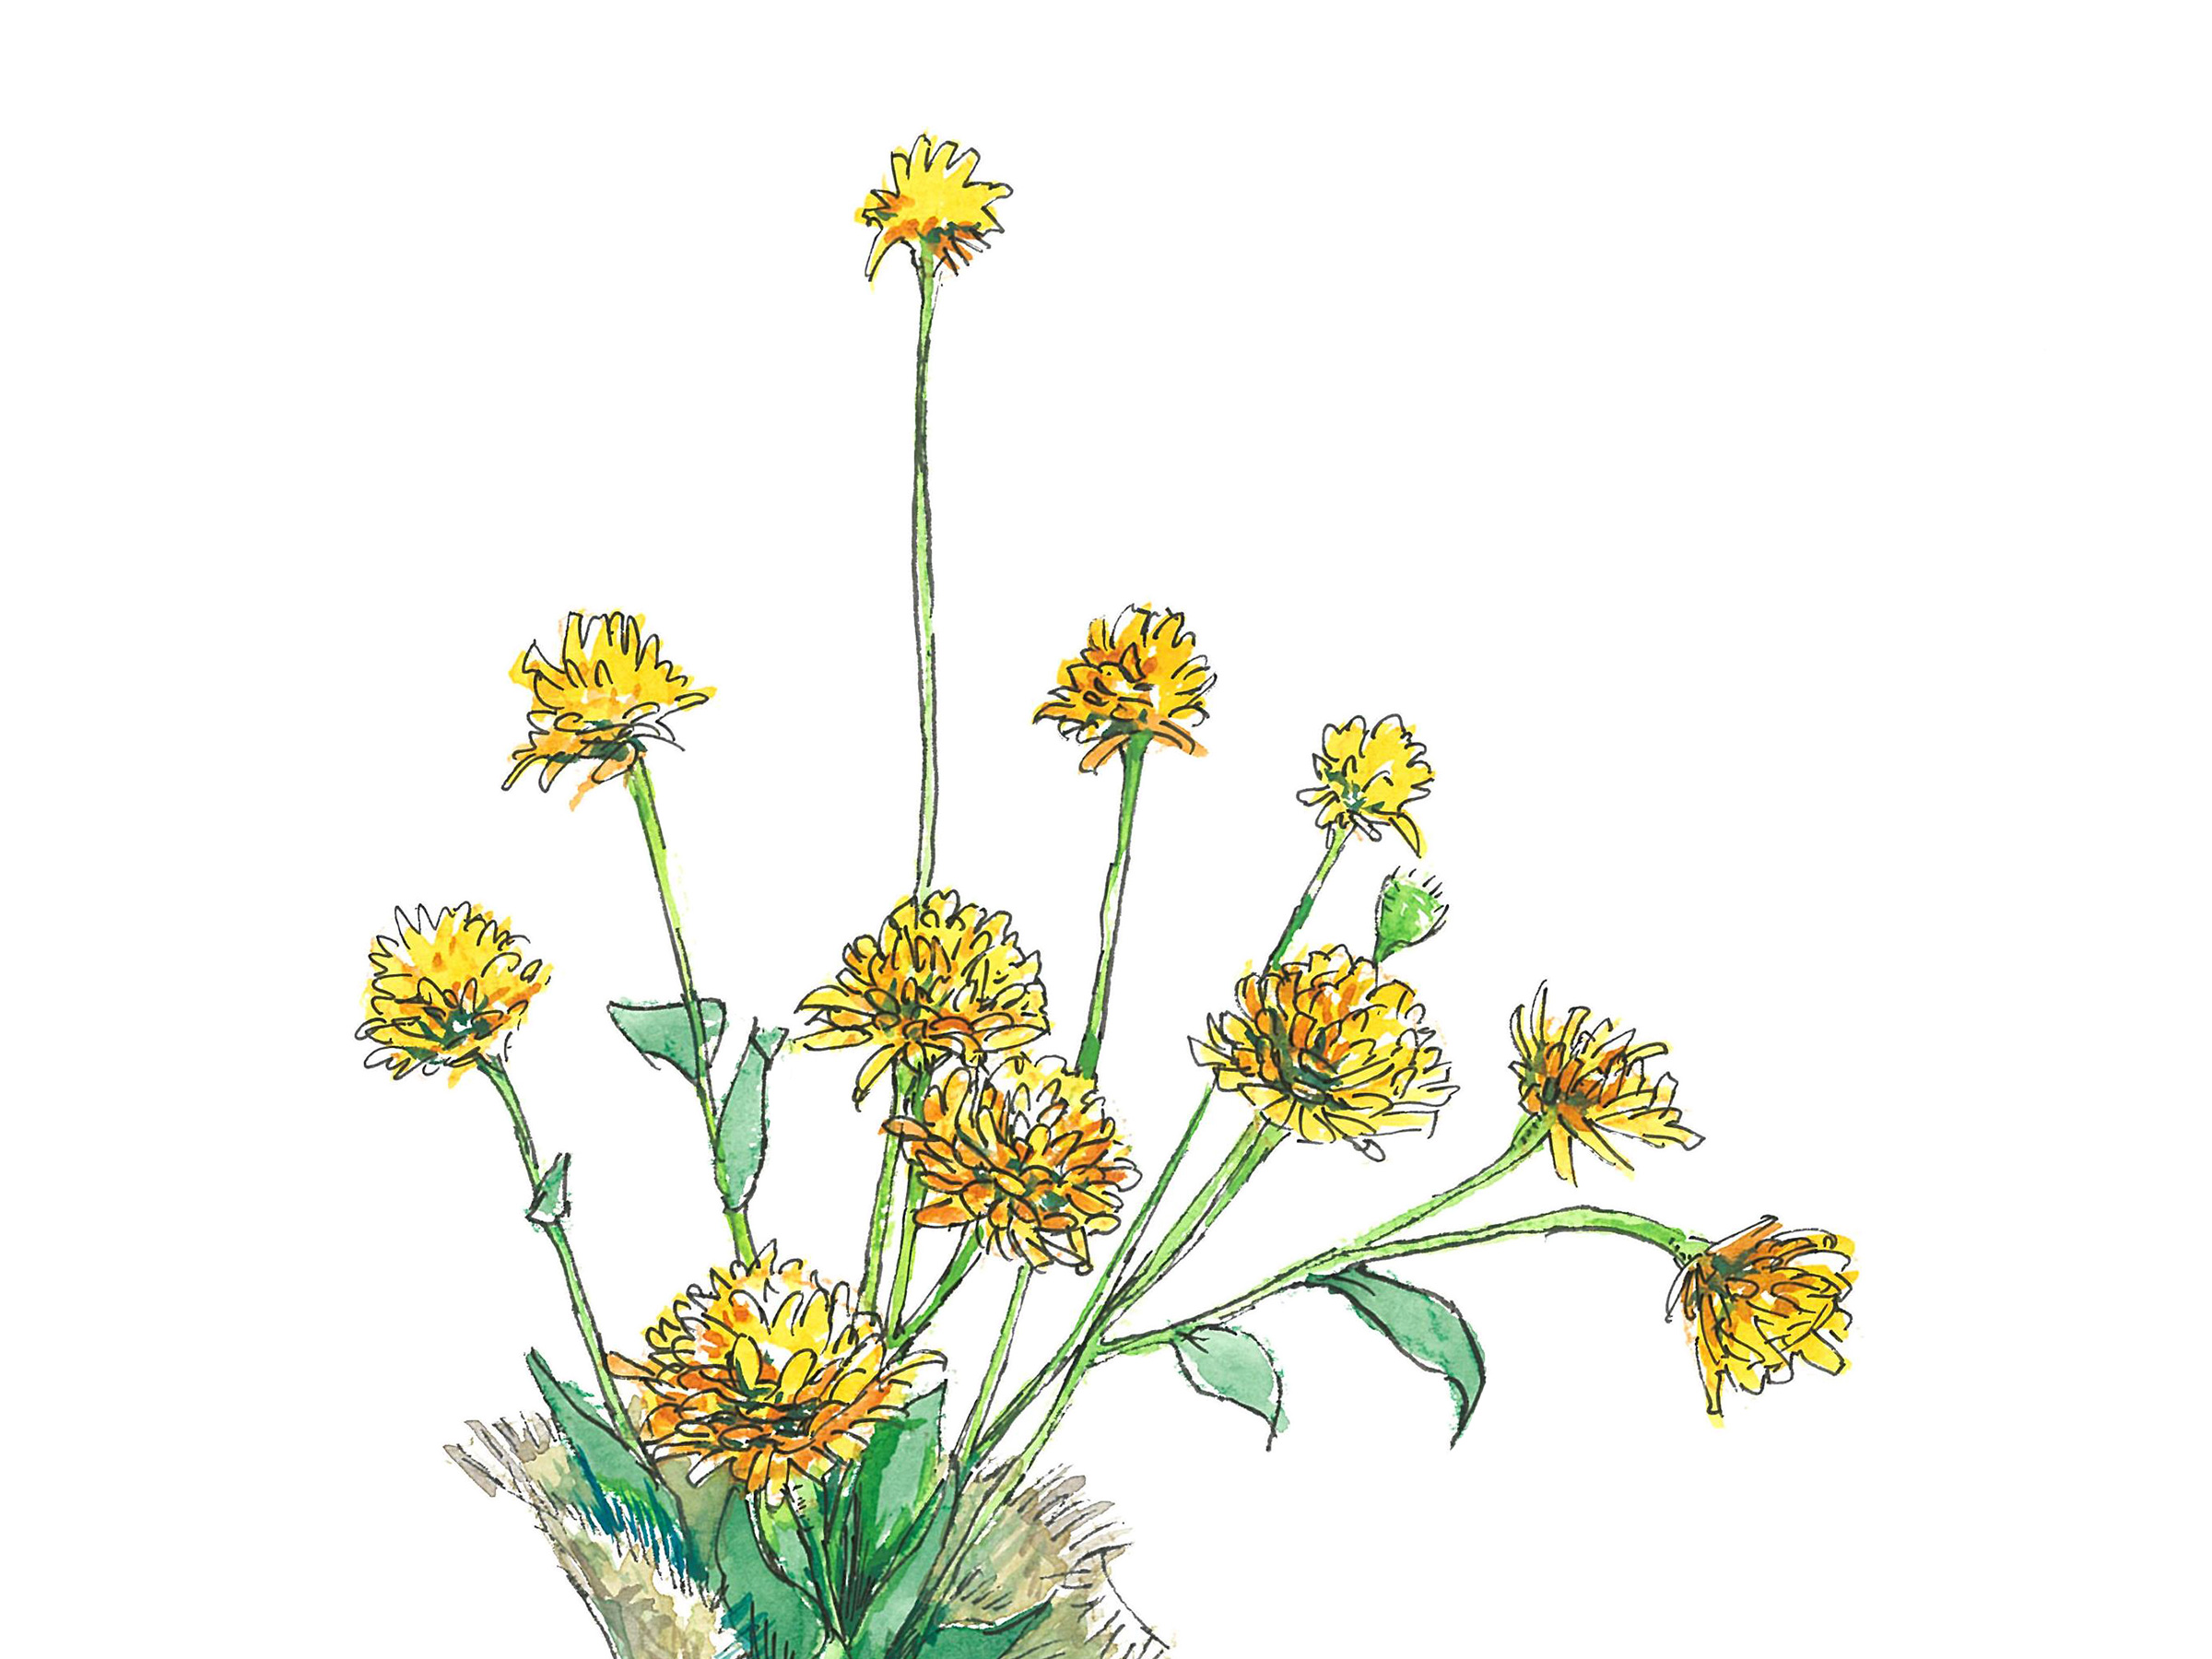 【7月24日の花】ヒメヒマワリ 夏気分が盛り上がる鮮やかな黄色の花